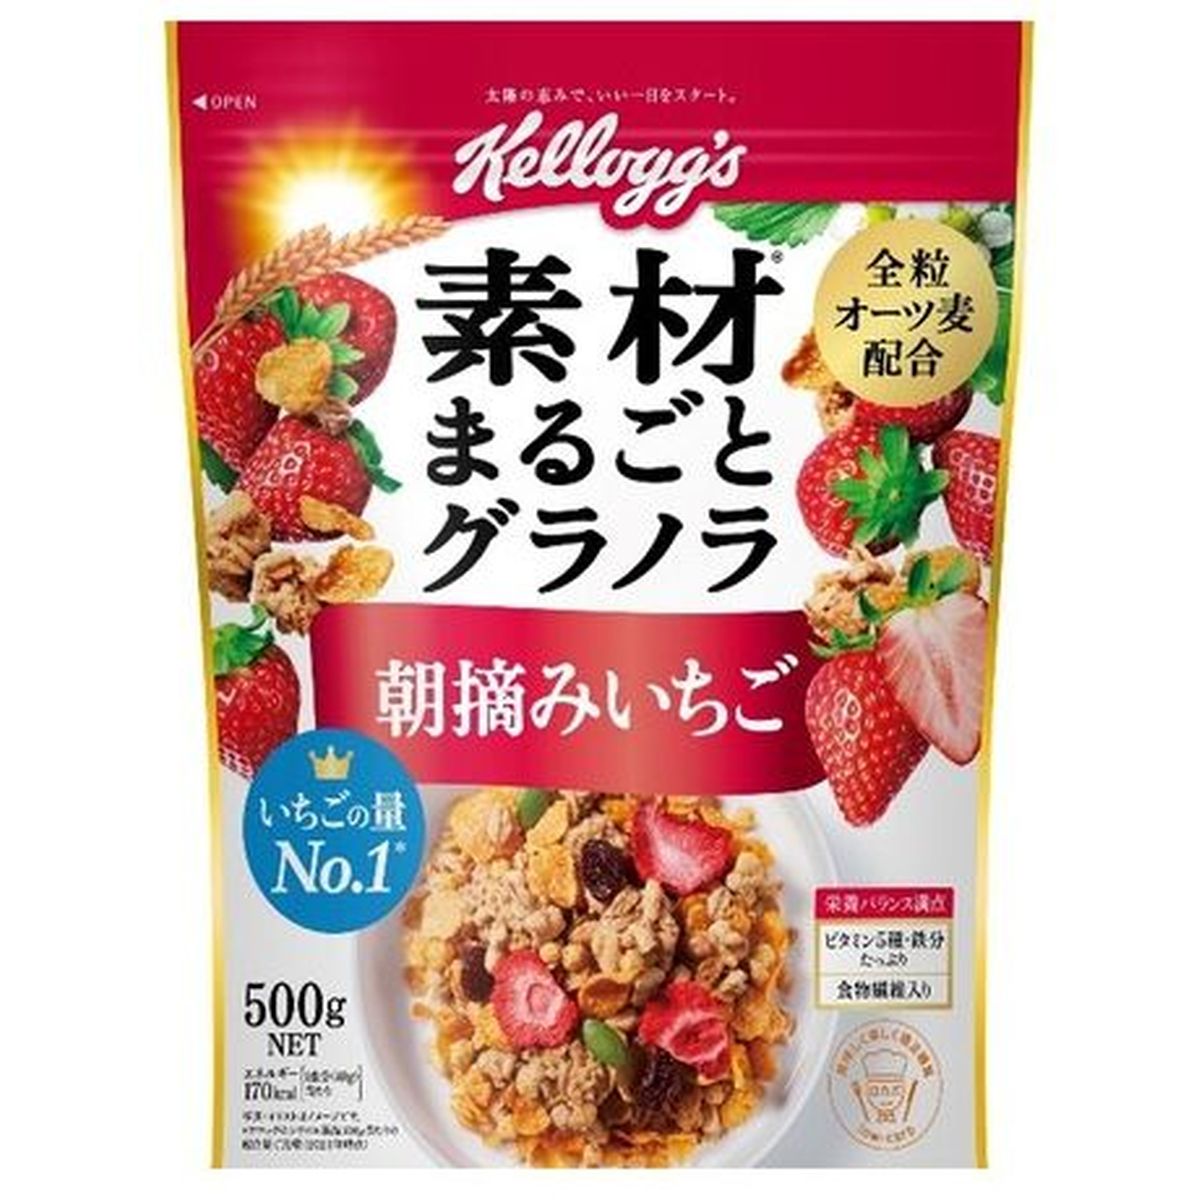 【6個入リ】日本ケロッグ 素材グラノラ朝摘ミイチゴ 500g